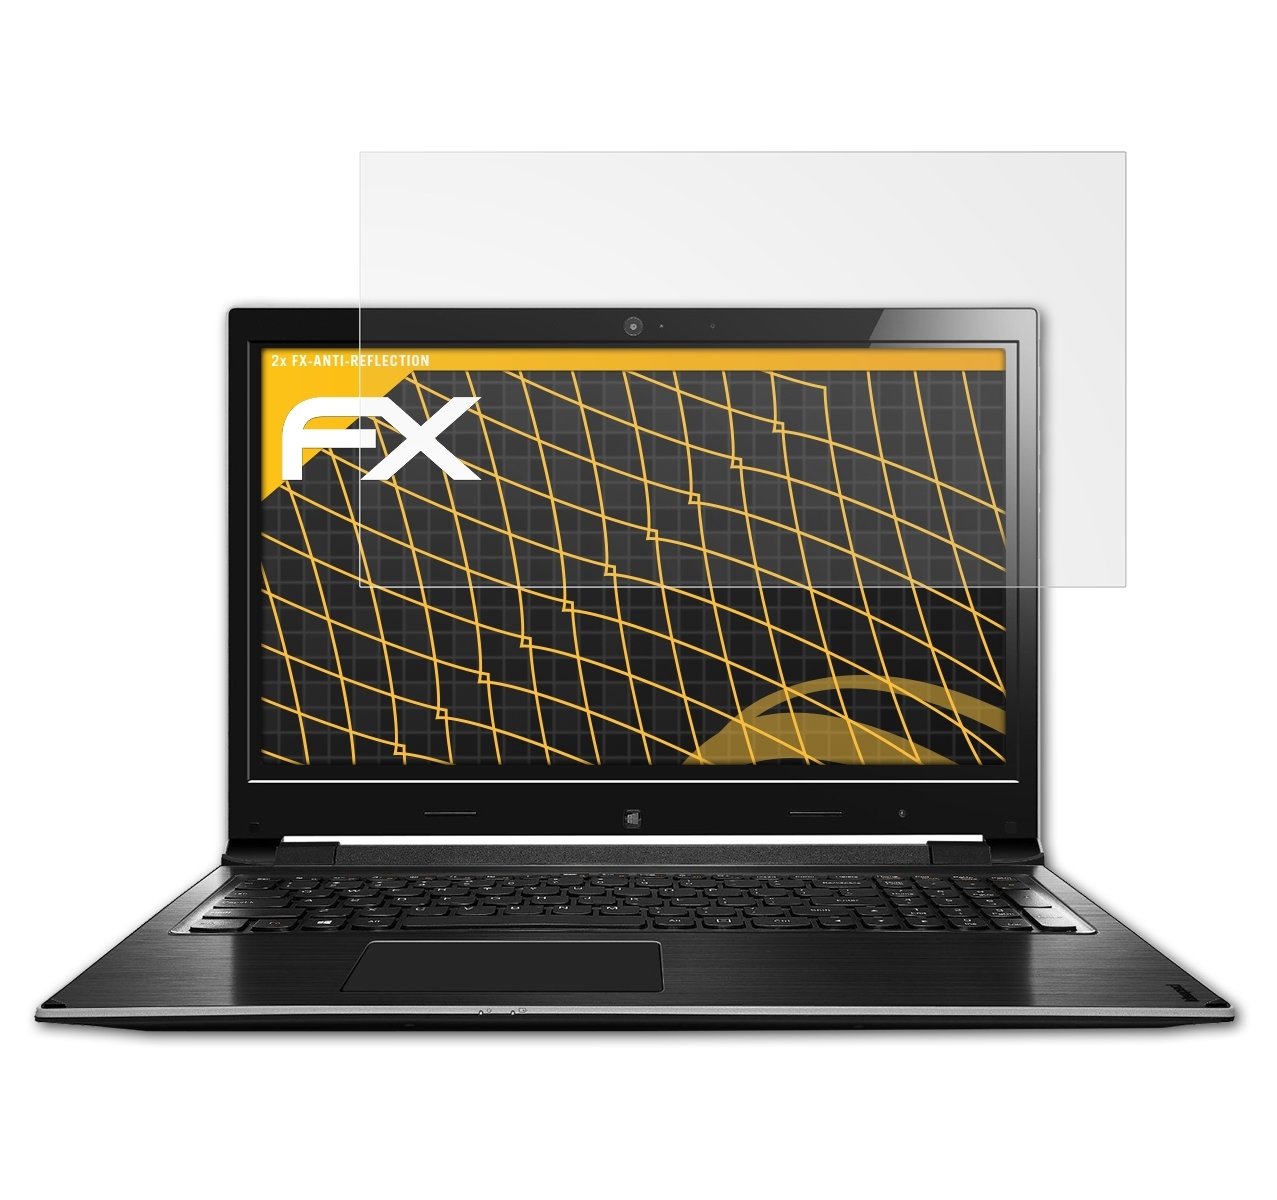 15D) Flex 15 IdeaPad Displayschutz(für 2x Lenovo / FX-Antireflex ATFOLIX